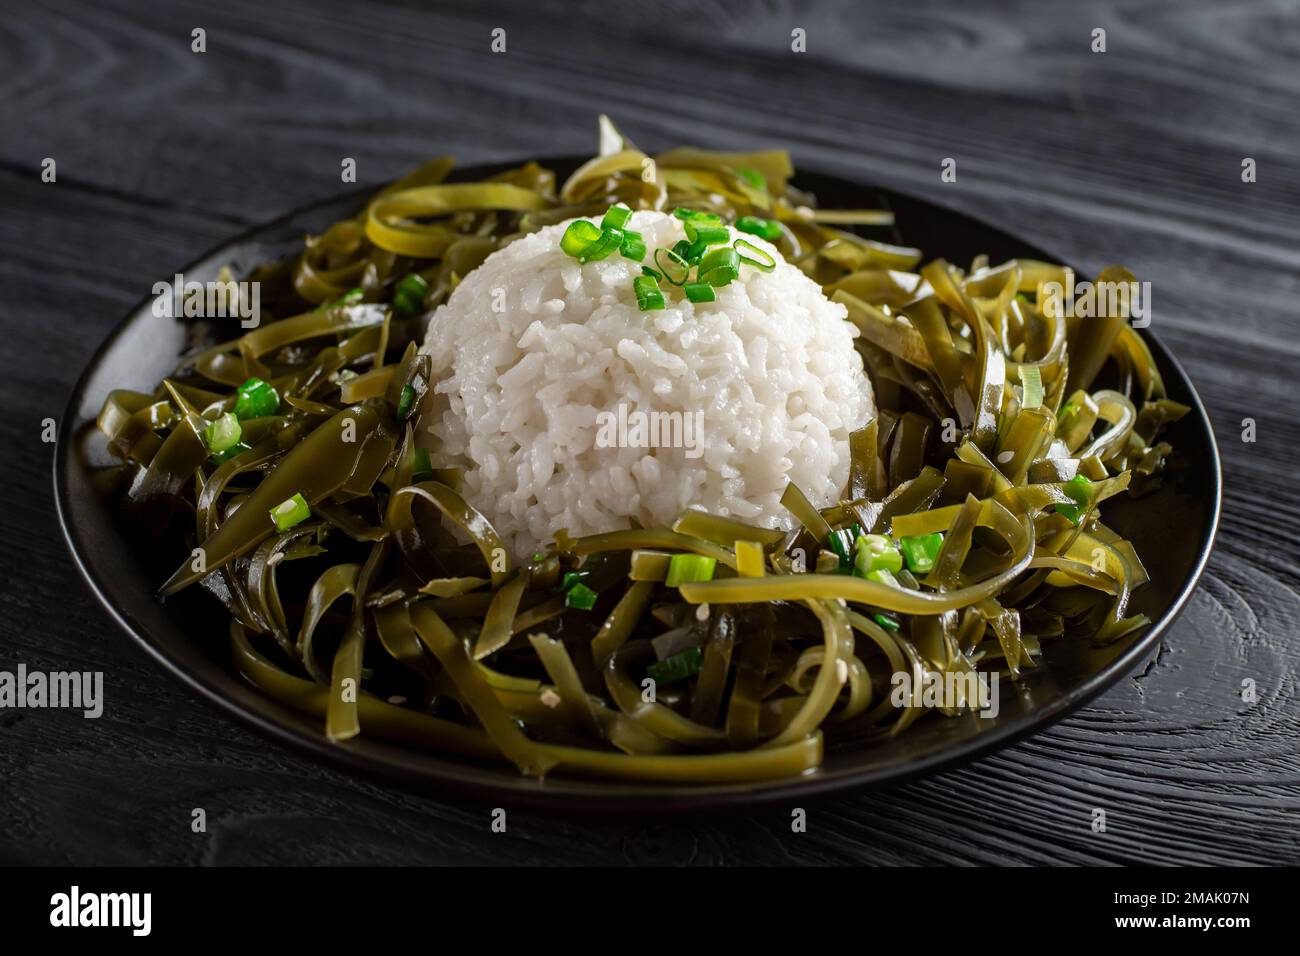 Cuisine coréenne. Manger sainement. Apéritif d'algues de Kelp (laminaria)  avec du riz cuit sur une assiette noire. Concept de nourriture saine.  Tradition. Cu Photo Stock - Alamy